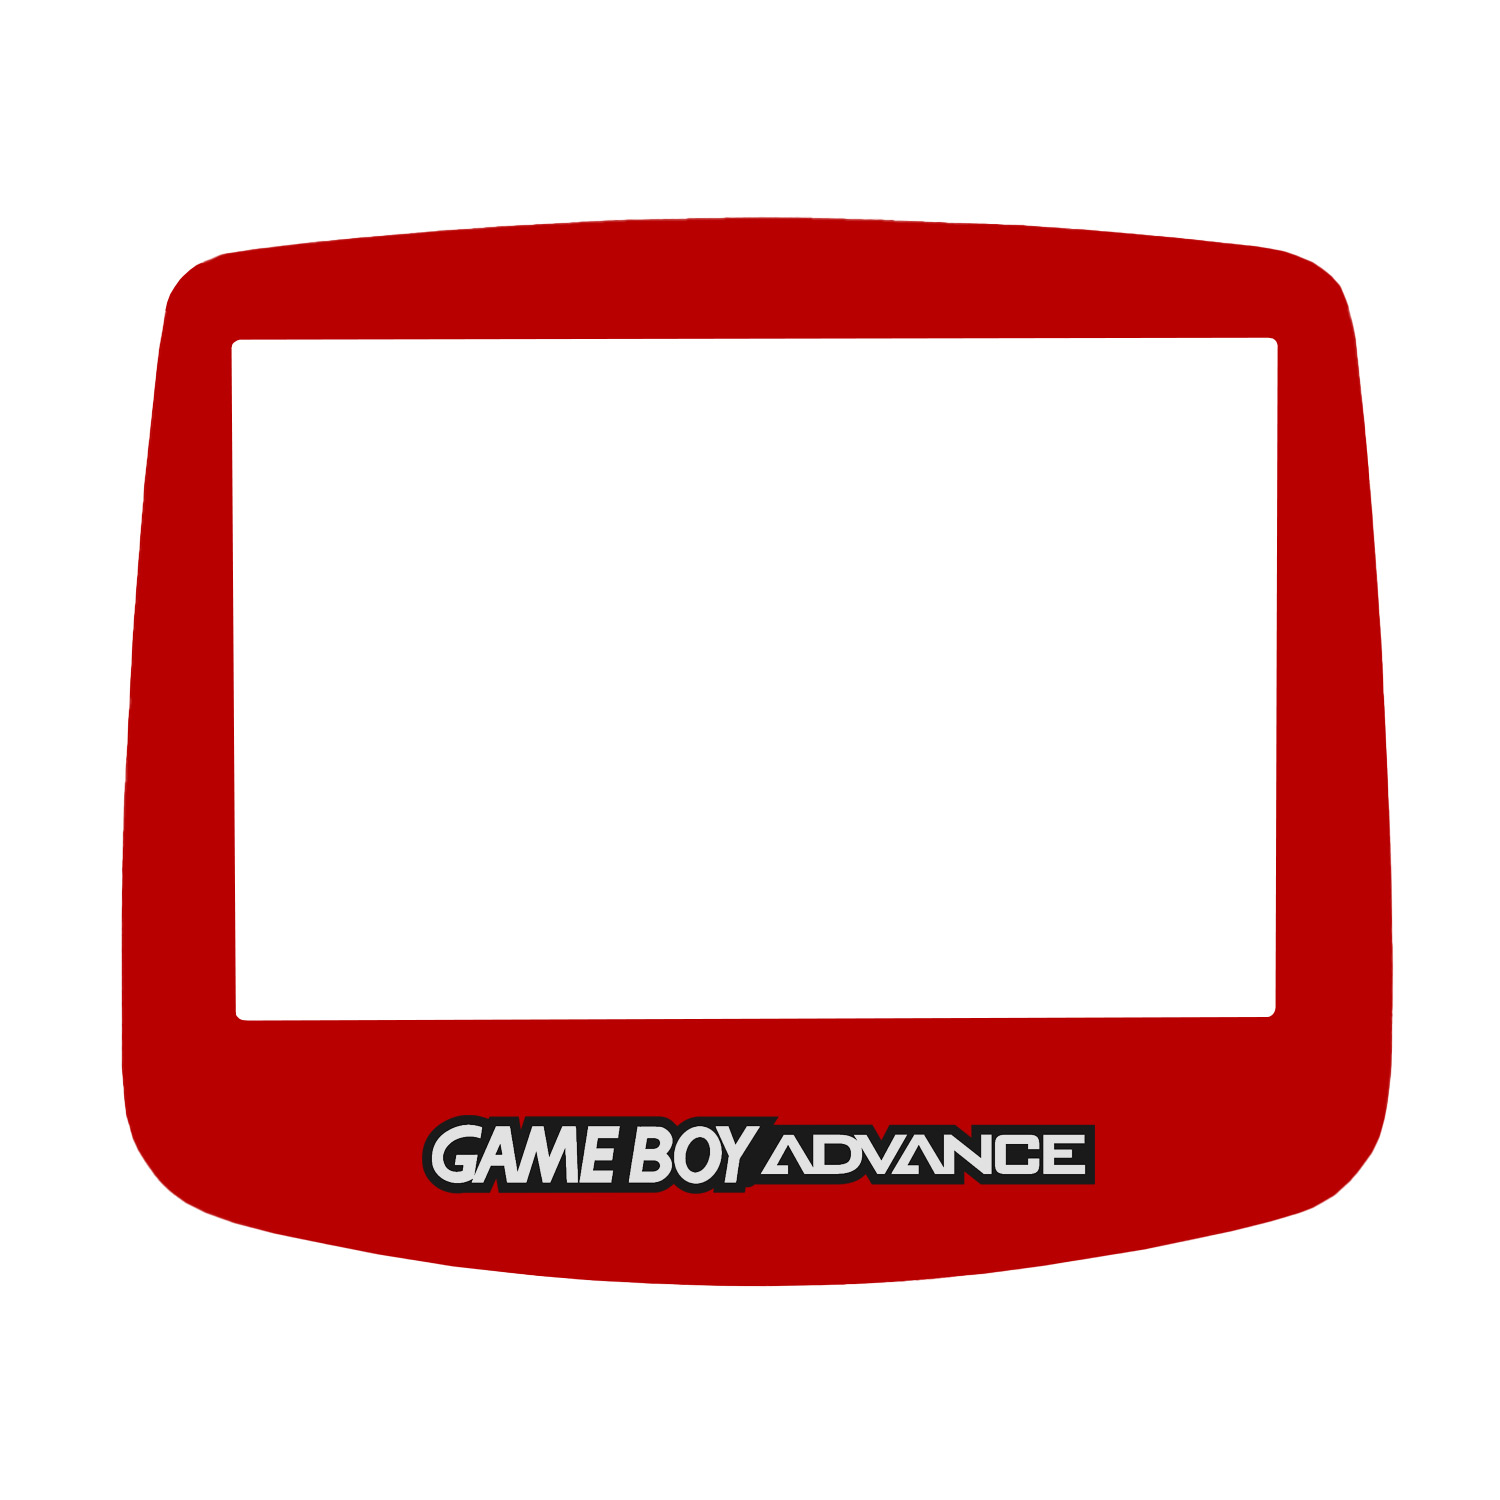 Display Scheibe (Rot) für Game Boy Advance